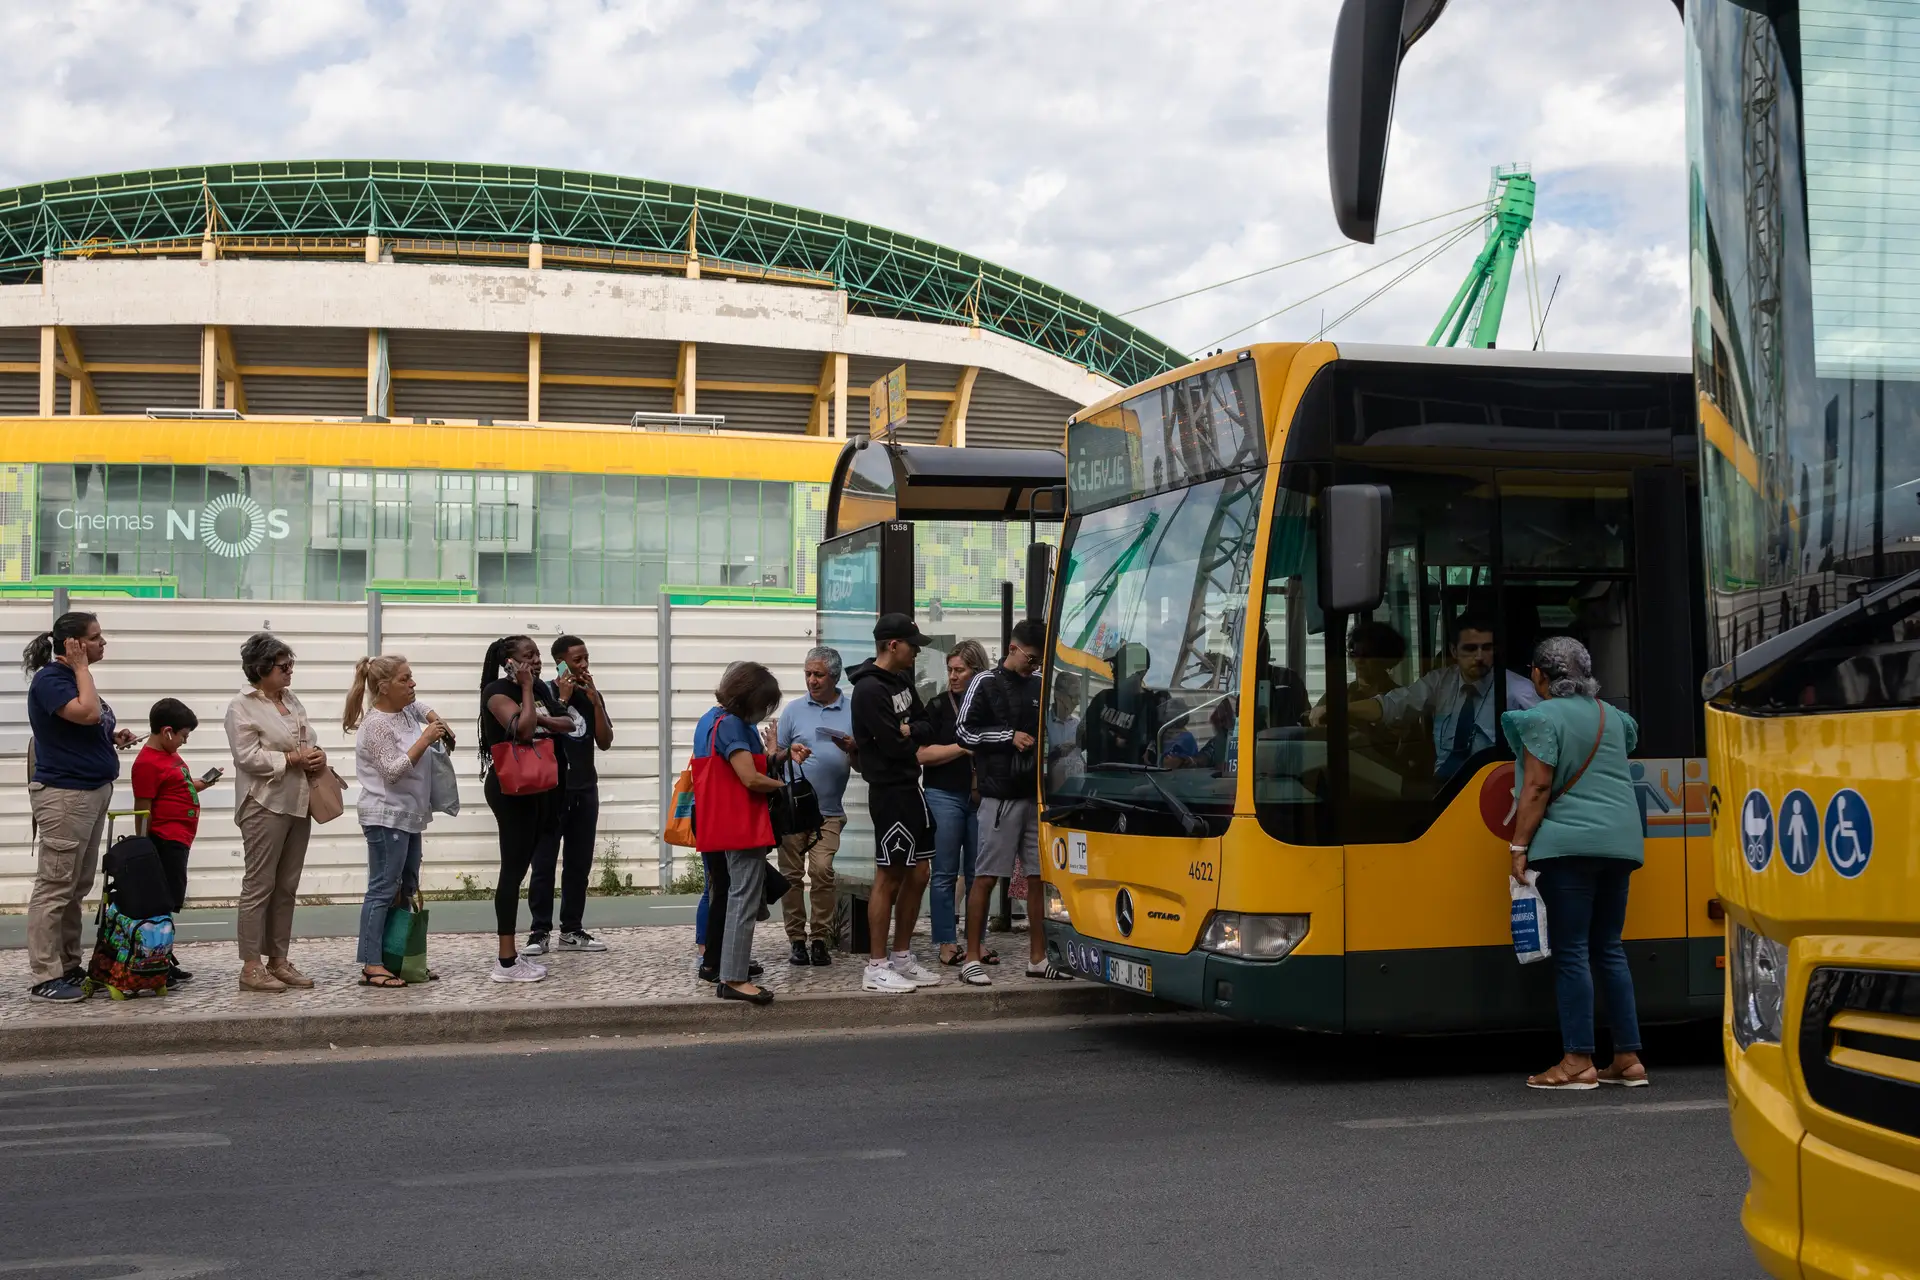 Utentes dos transportes protestam segunda-feira contra "caos" das obras do Metro de Lisboa